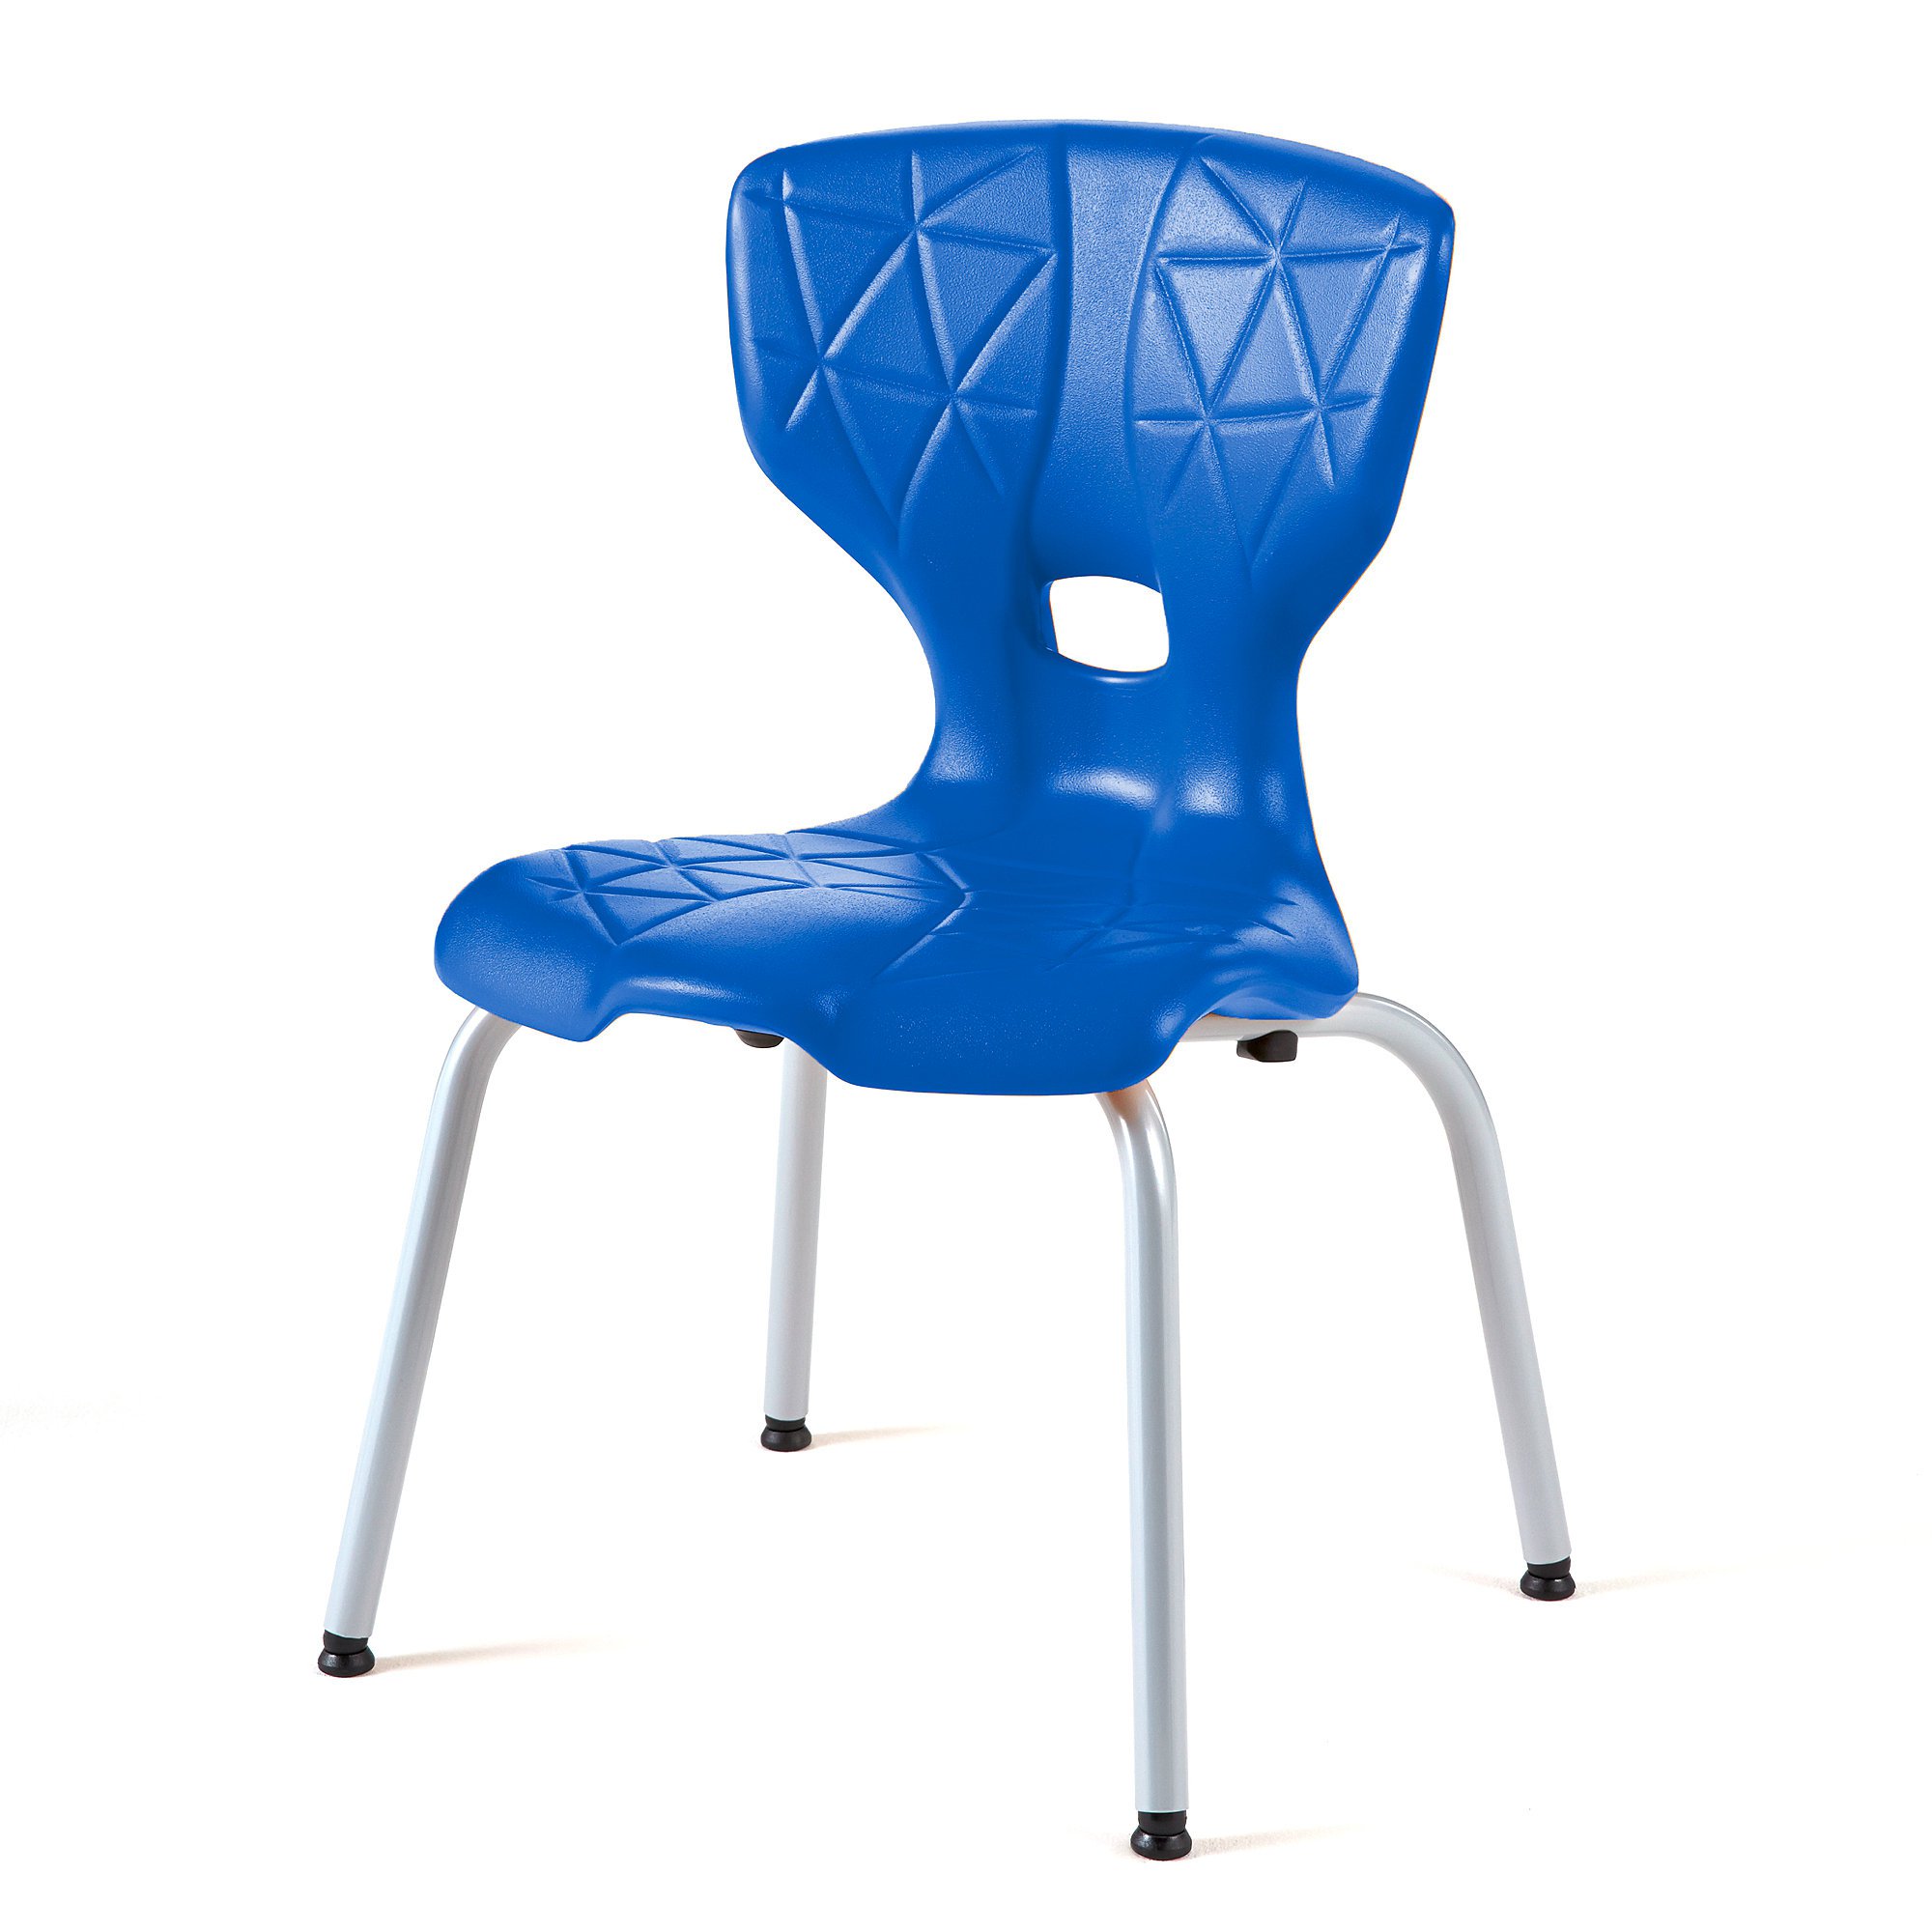 Children's chair ALDA I, H 350 mm, blue